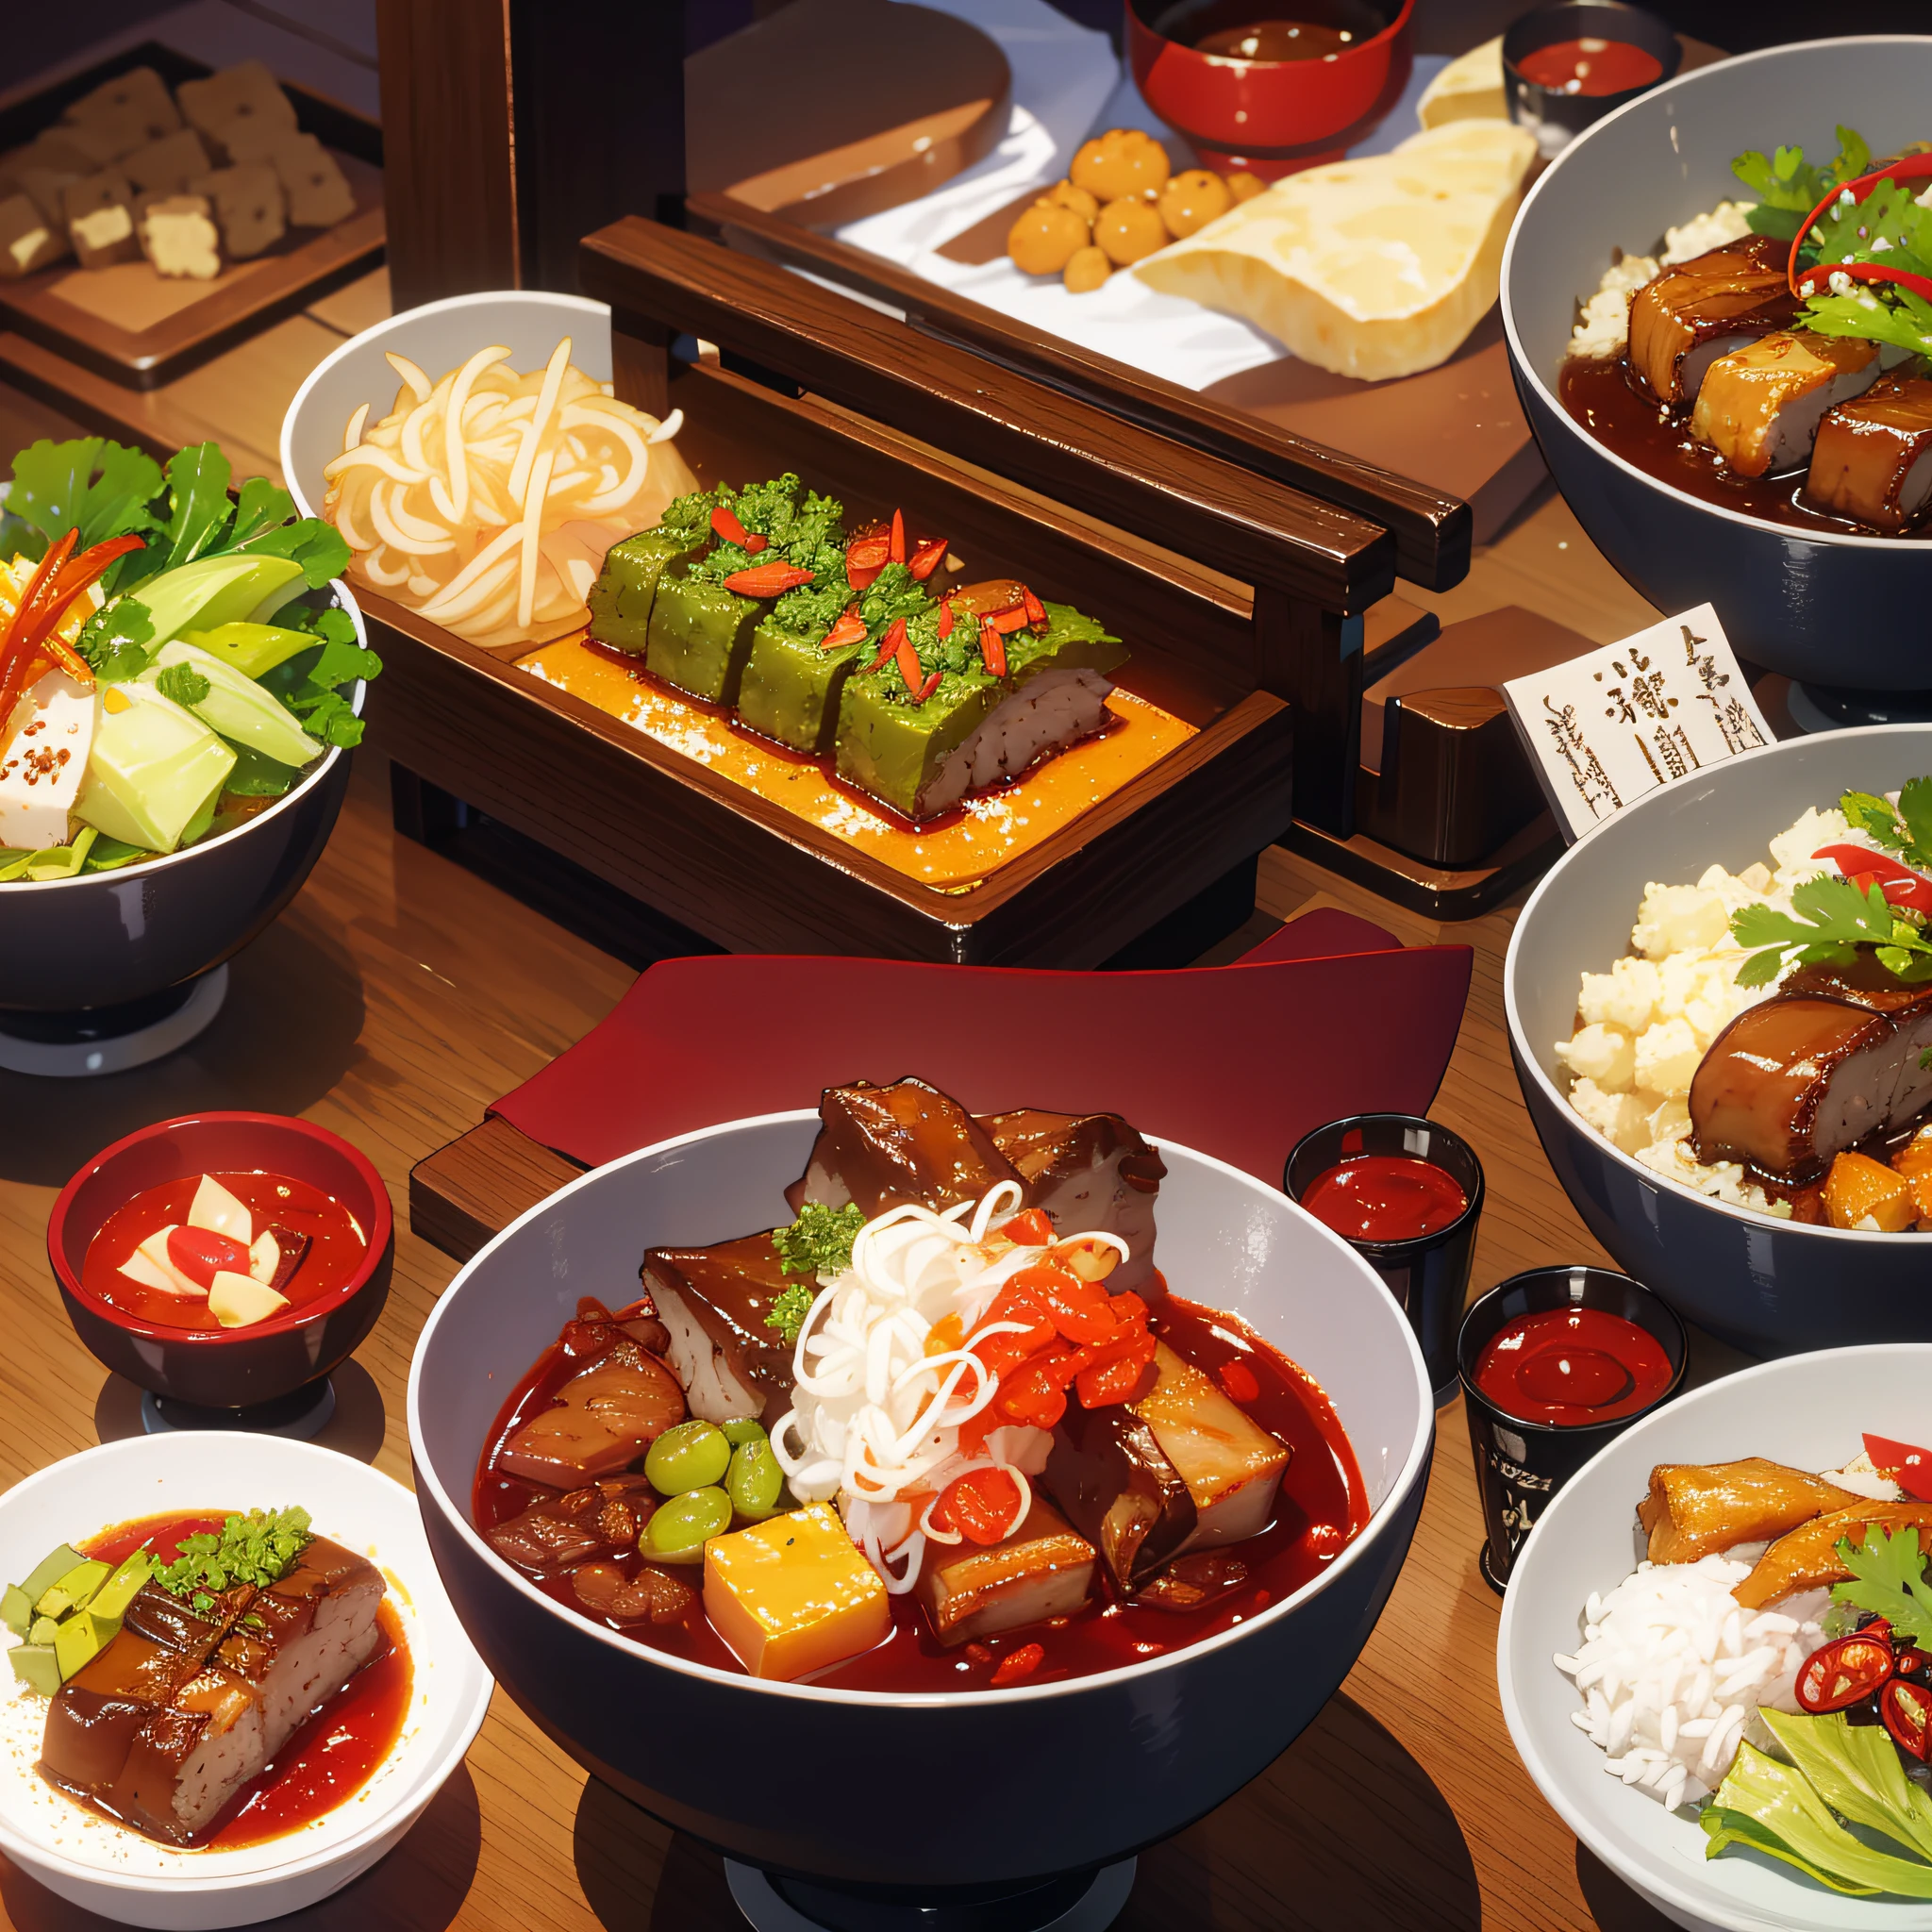 อาหาร, หน้าจอเรื่องราว, ภาพระยะใกล้ของอาหาร, อาหารญี่ปุ่น